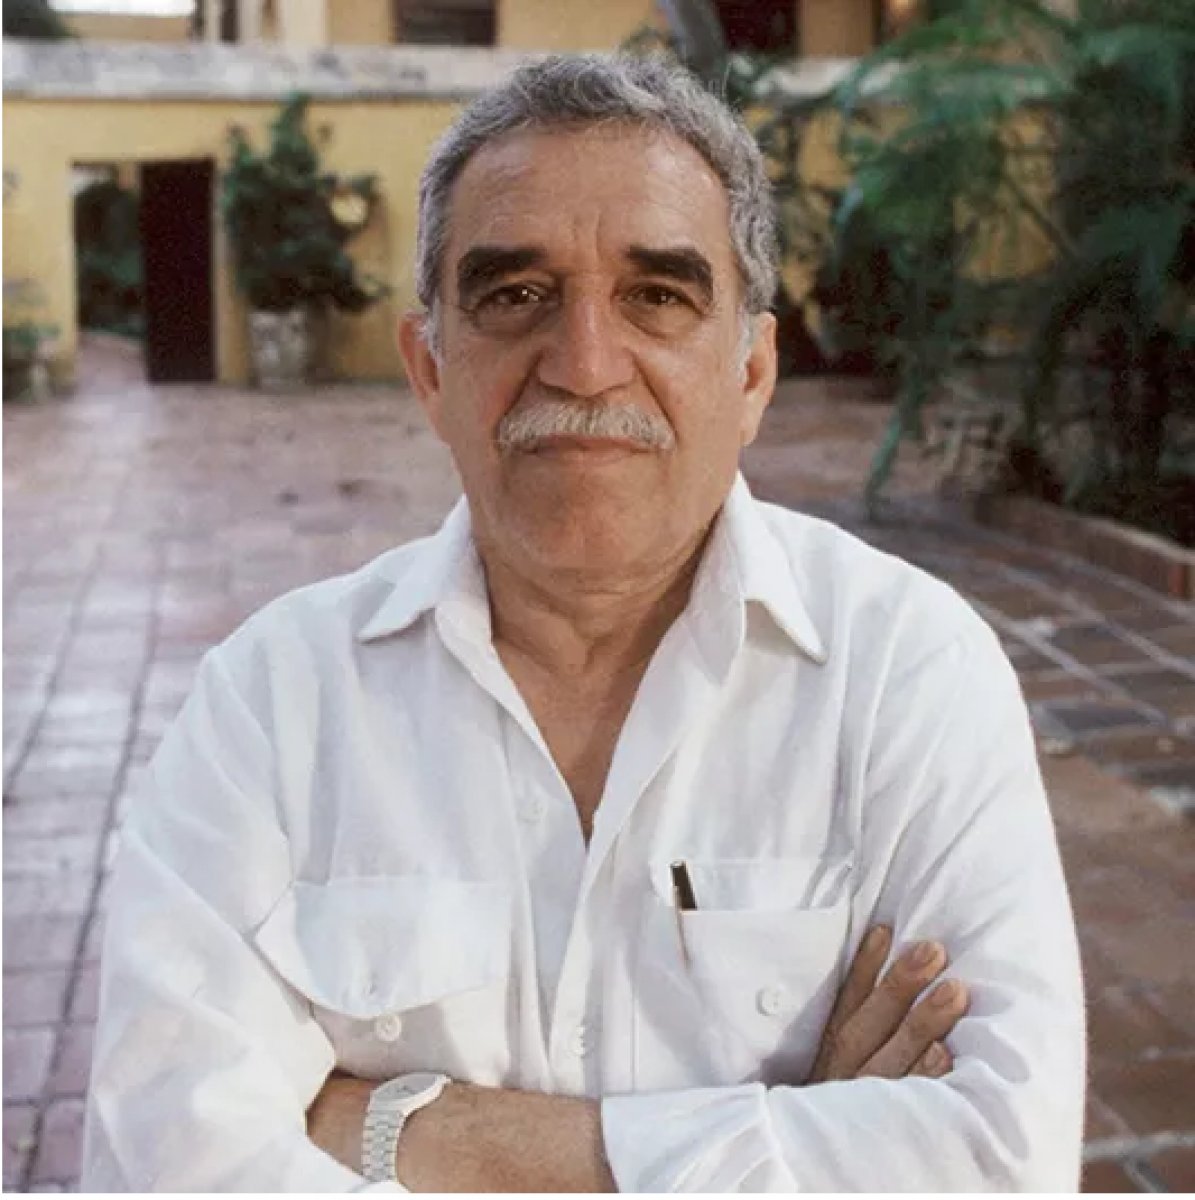 Büyülü gerçekçiliğin temsilcisi sayılan Gabriel García Márquez in doğum günü #1